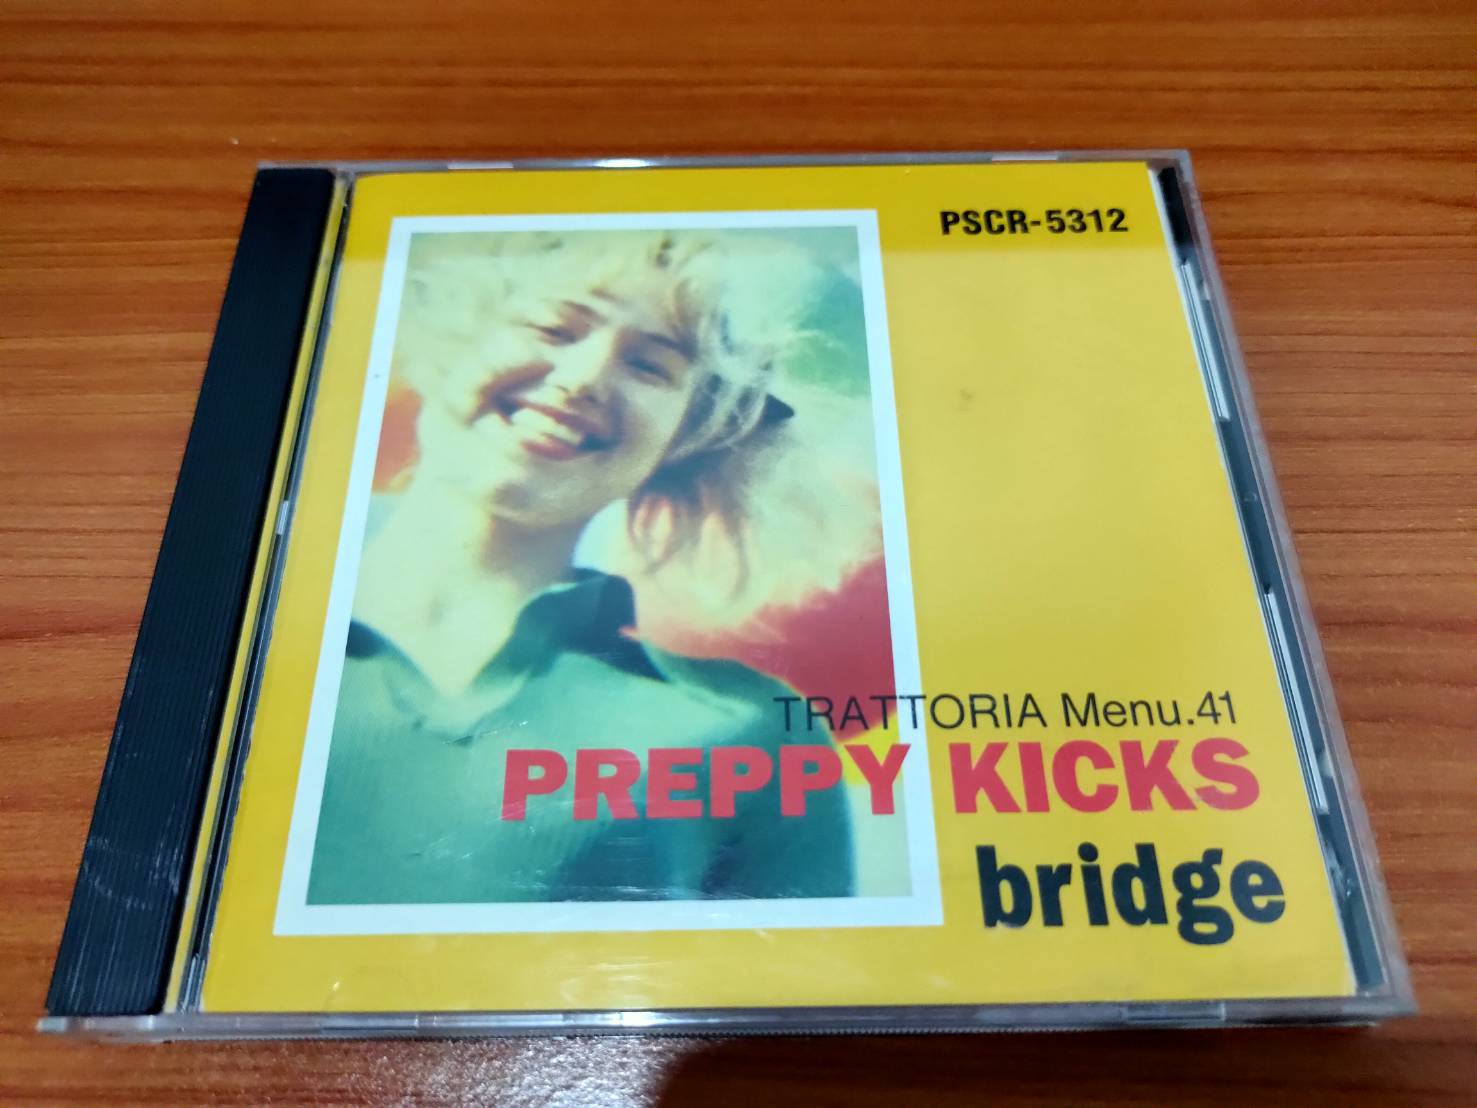 CD.MUSIC ซีดีเพลงสากล BRIDGE PREPPY KICKS